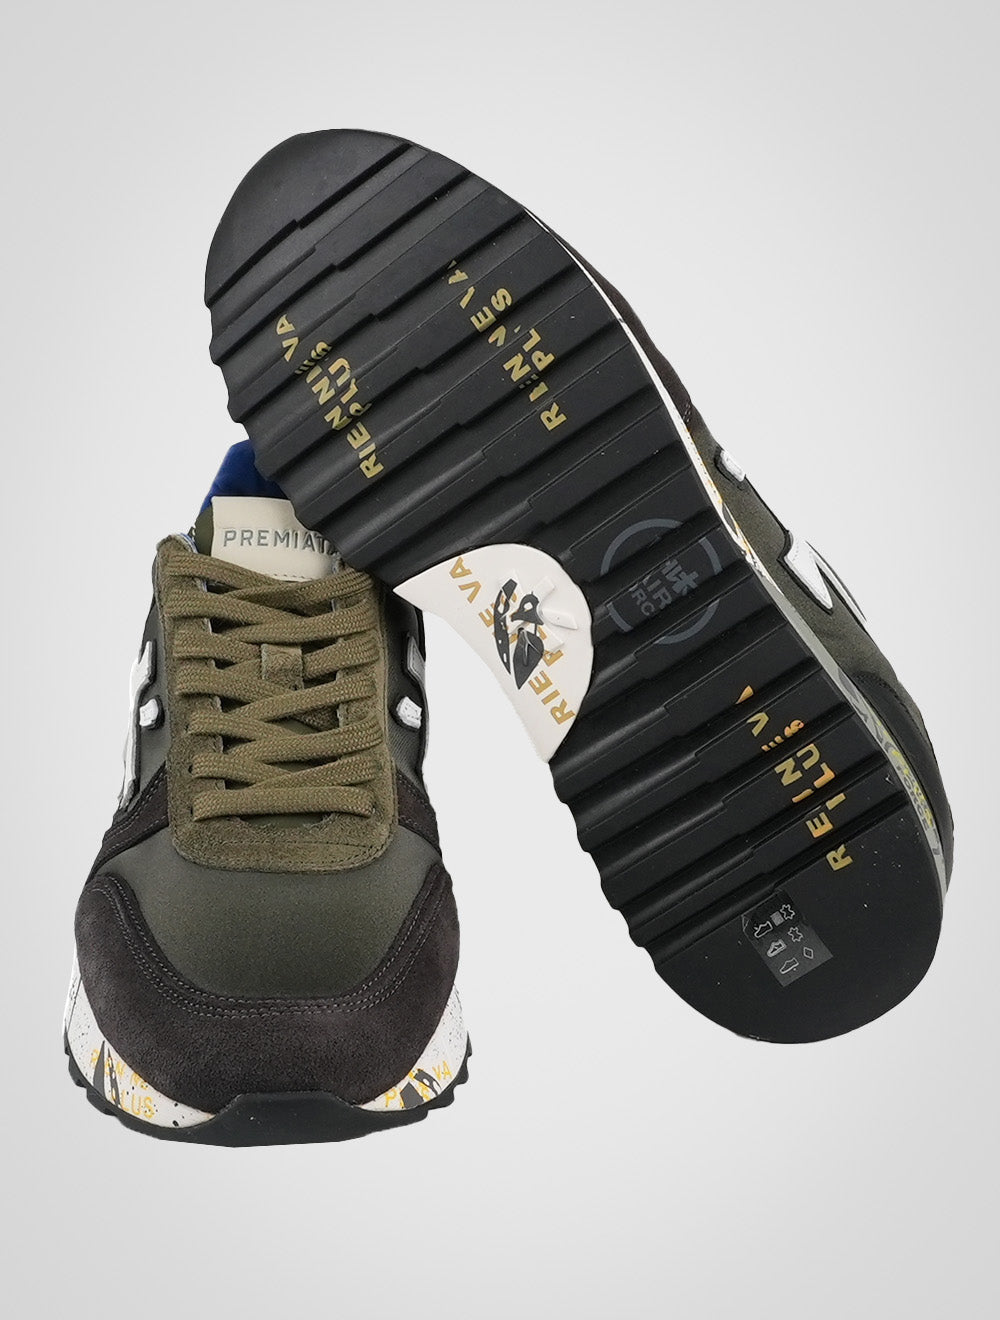 أحذية رياضية Premiata متعددة الألوان من الجلد المدبوغ Pa